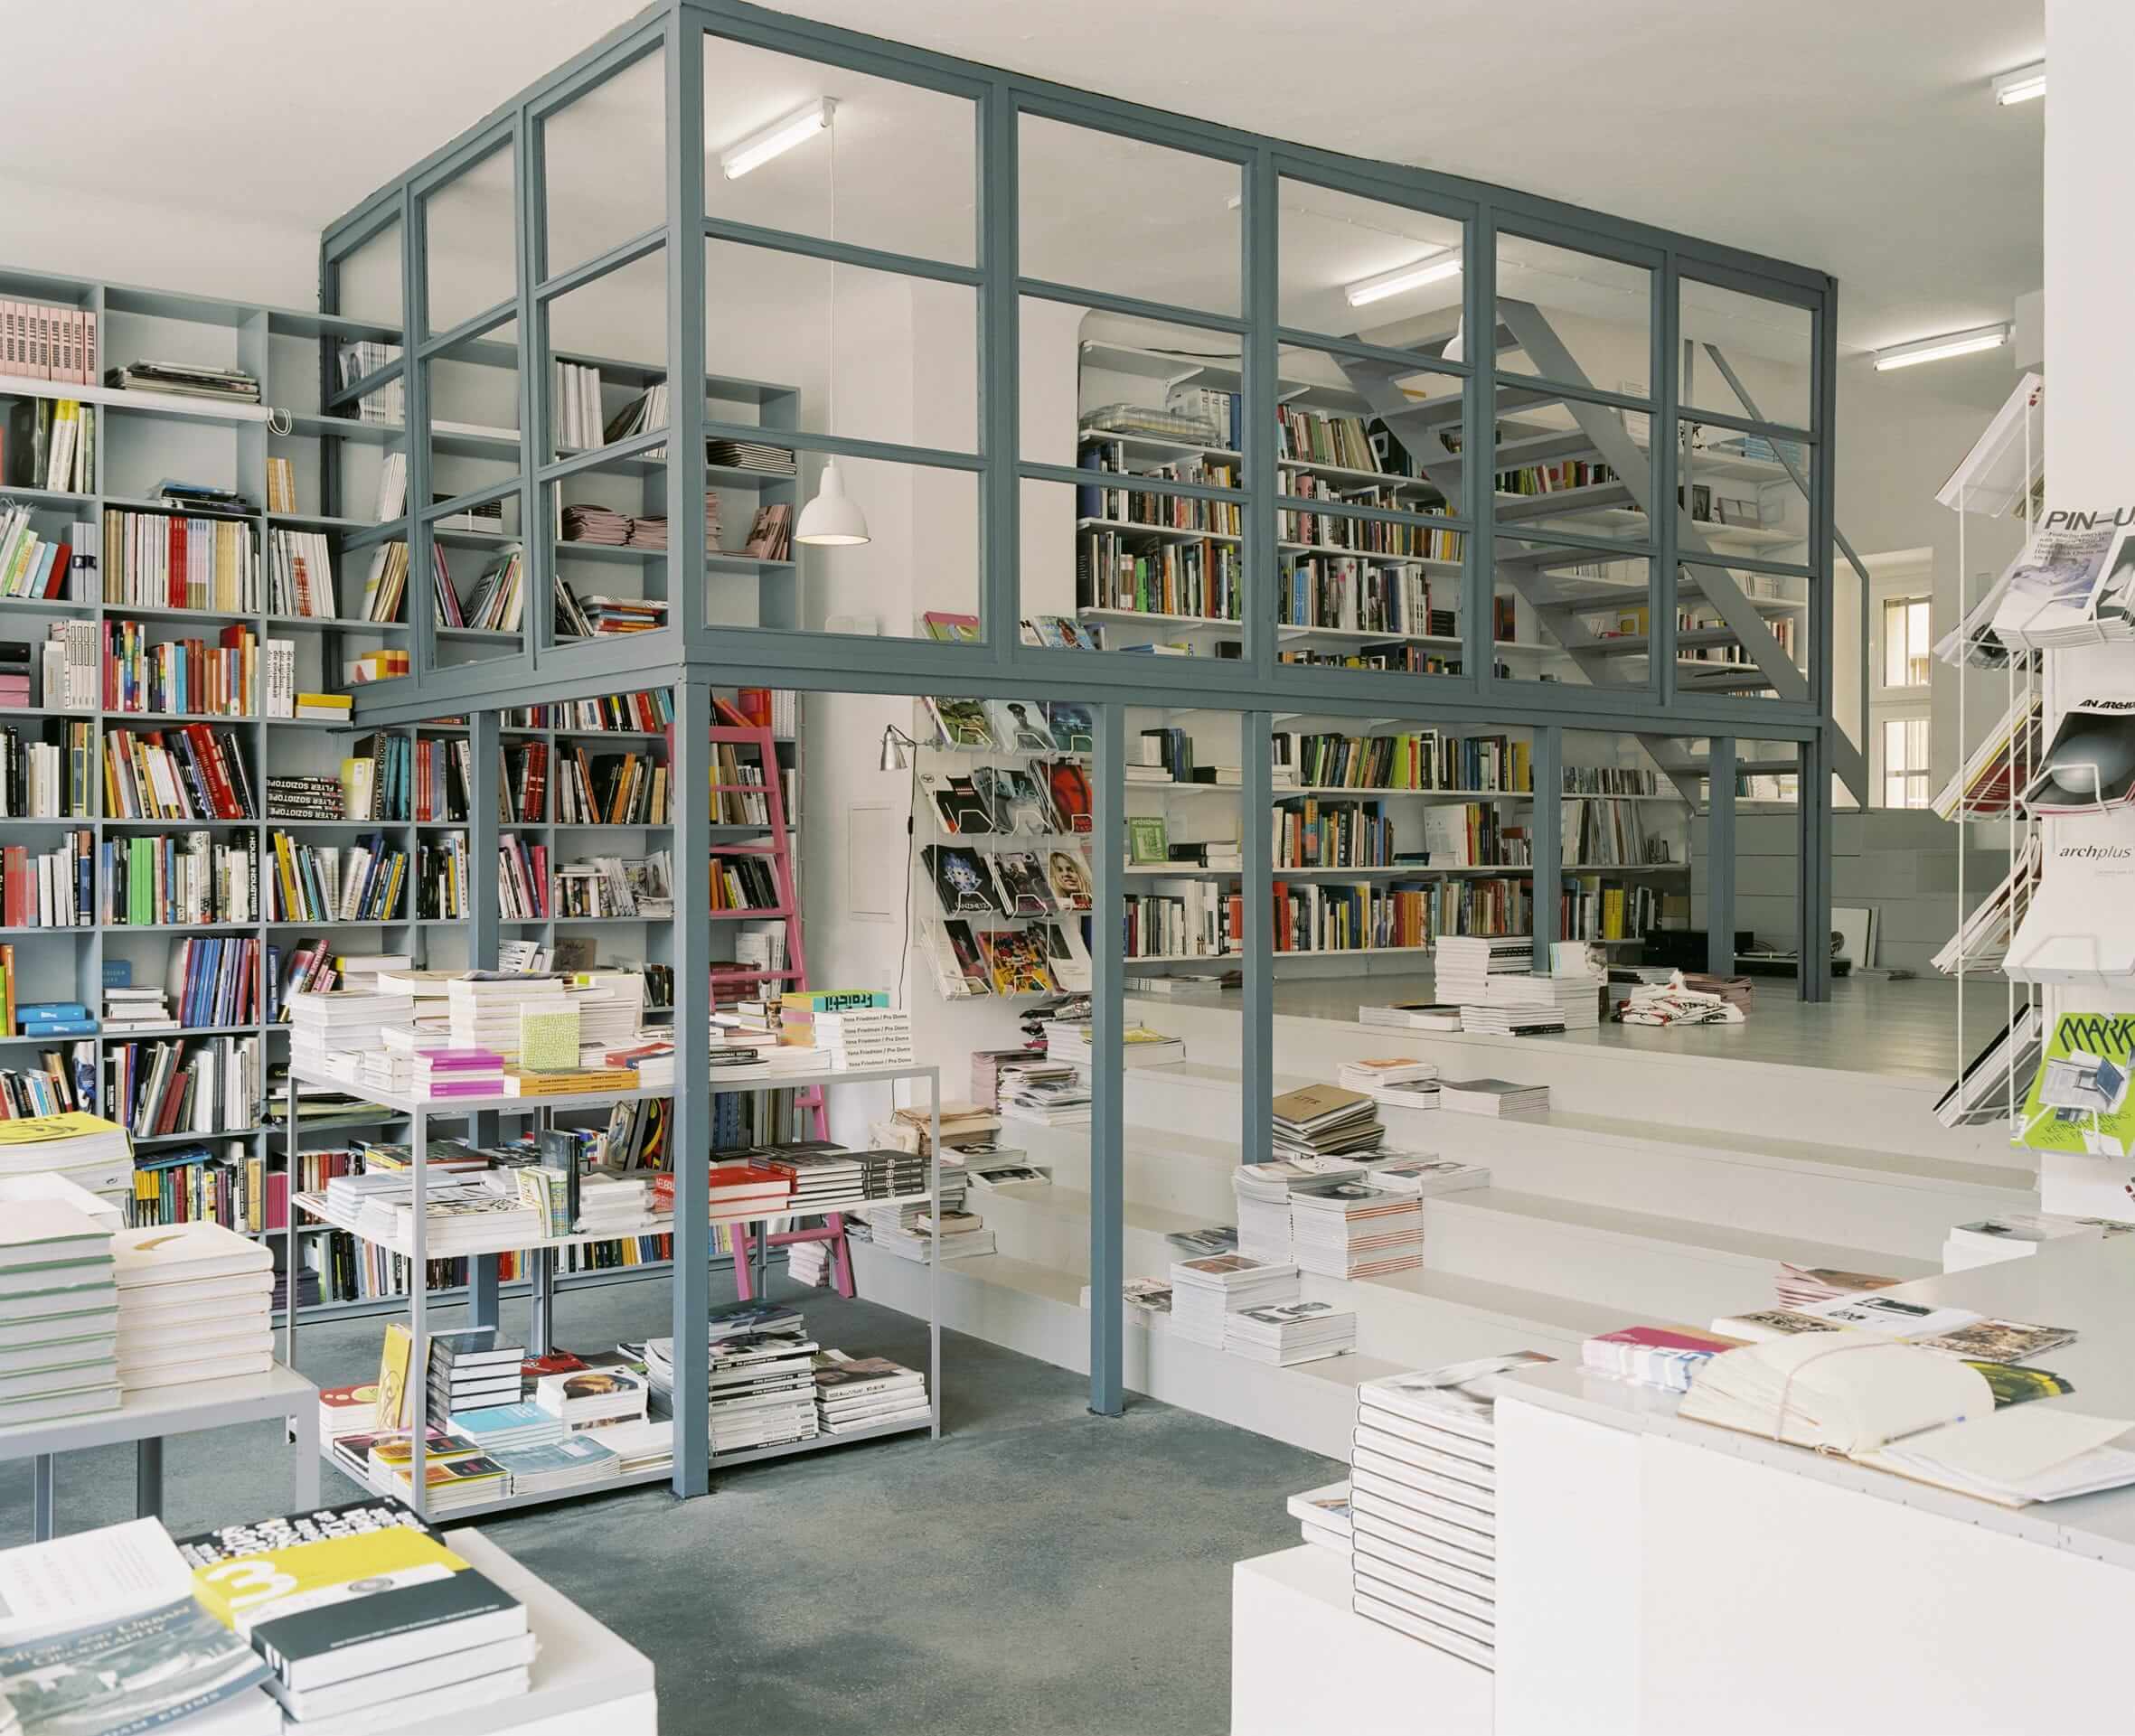 Интерьер книжного магазина Pro qm в Берлине, Германия. Источник: инстаграм-страница магазина